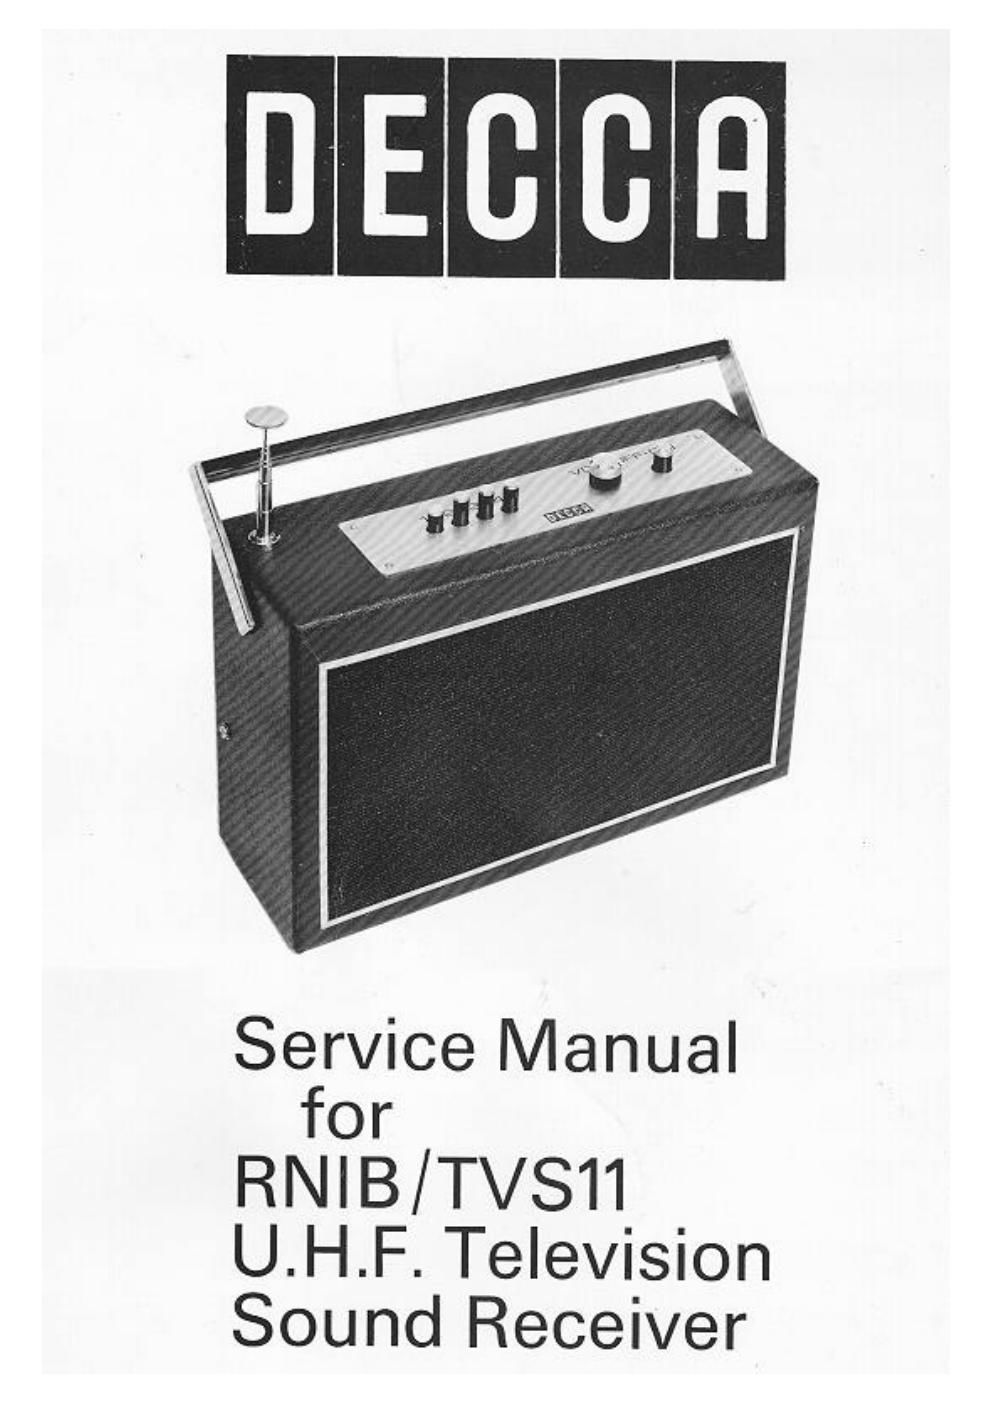 decca tvs 11 service manual